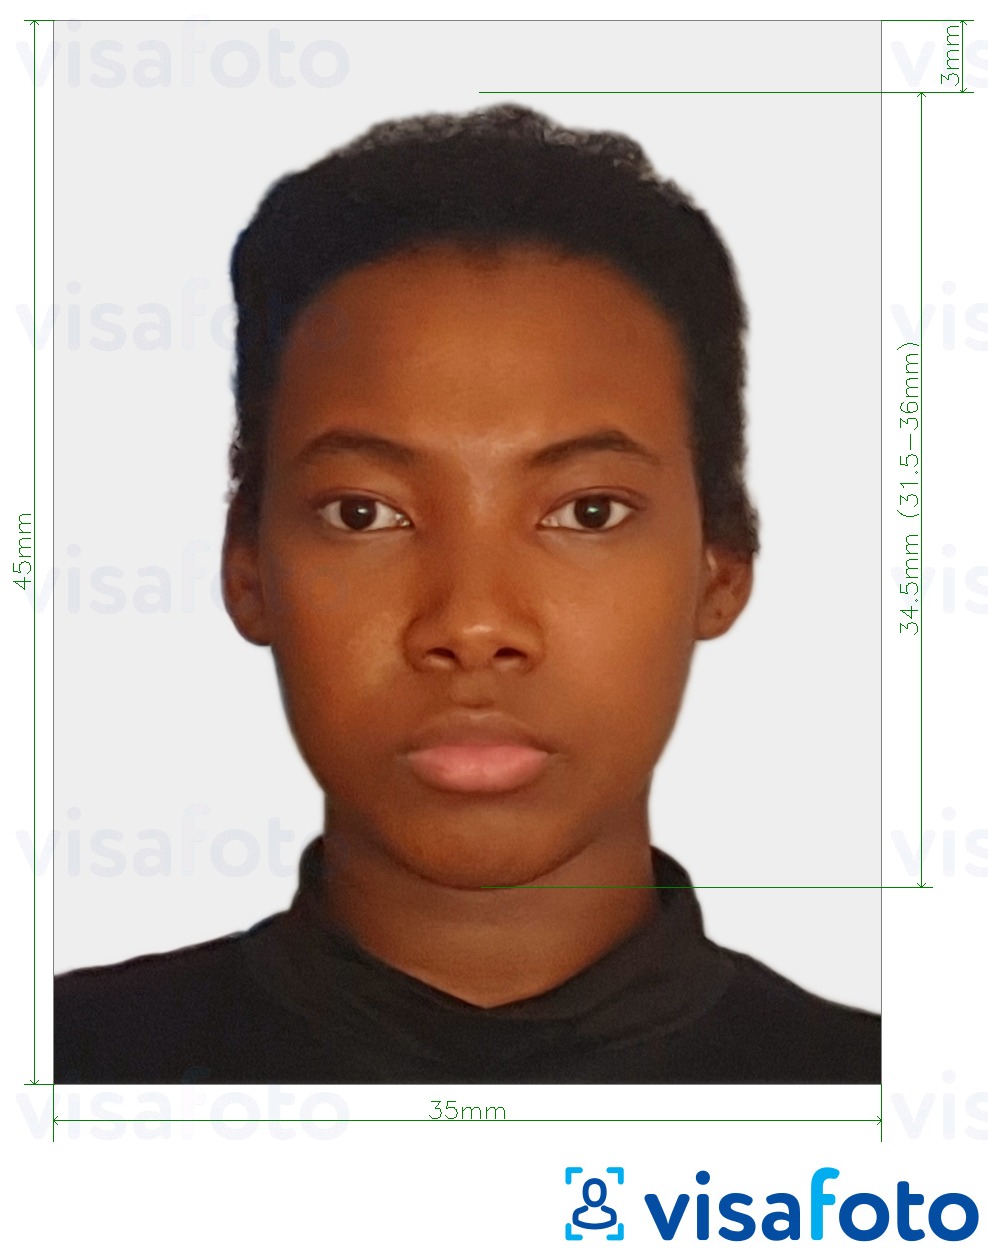 Ví dụ cho ảnh với Congo (Brazzaville) hộ chiếu 35x45 mm (3.5x4.5 cm) cùng kích cỡ xác định chính xác.